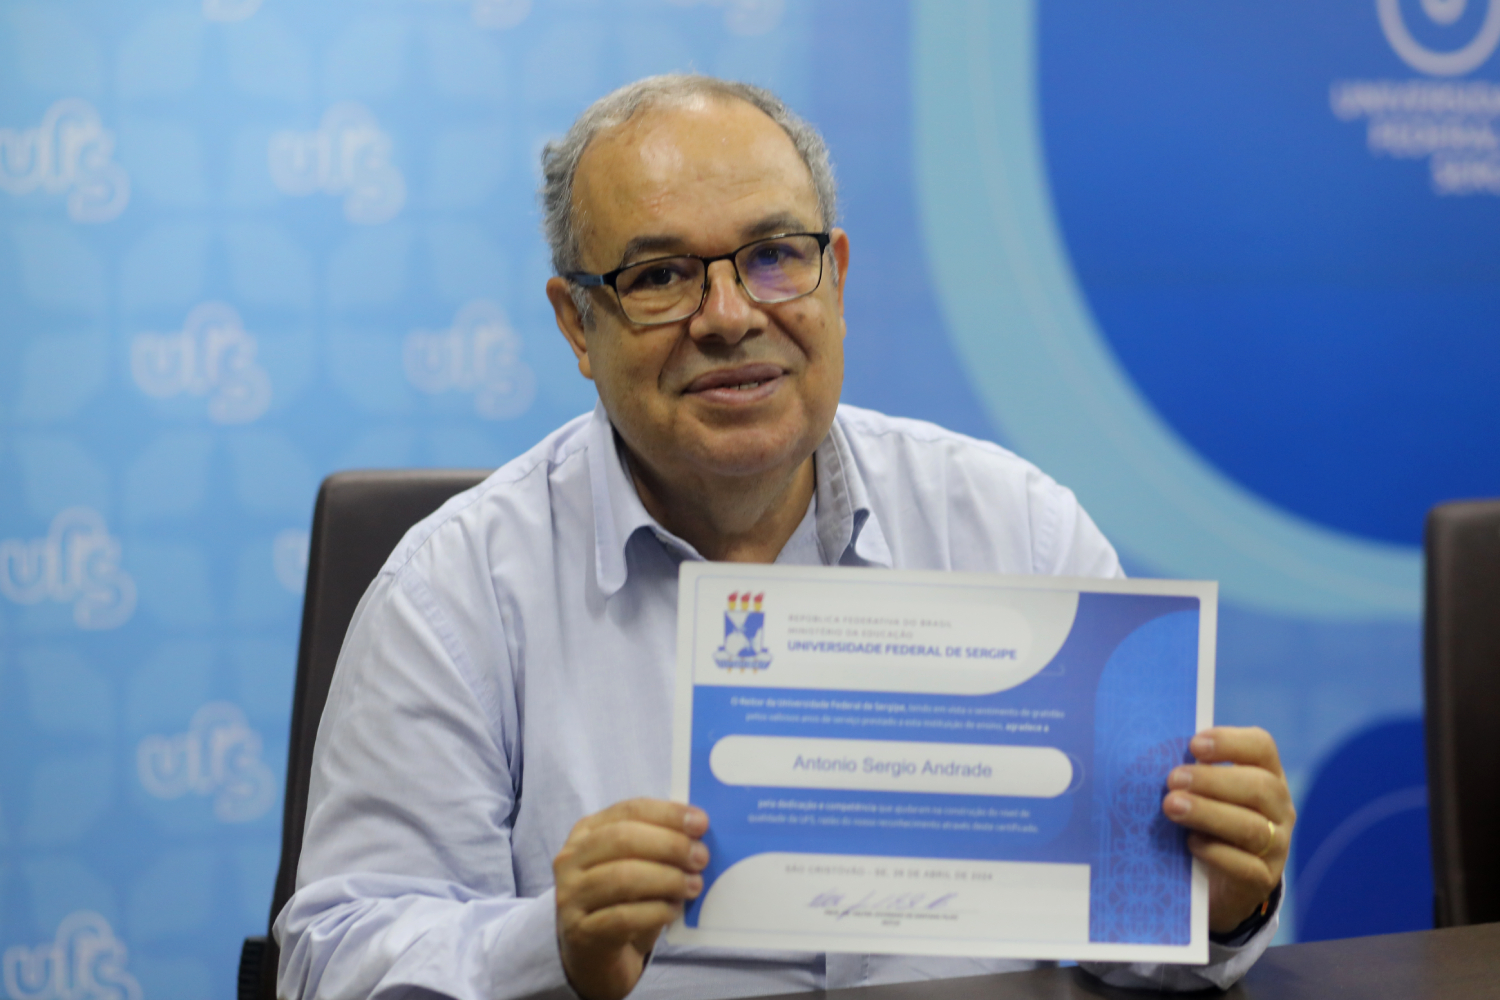 Antônio Sérgio Andrade se aposentou há dois meses. (foto: Schirlene Reis/Ascom UFS)